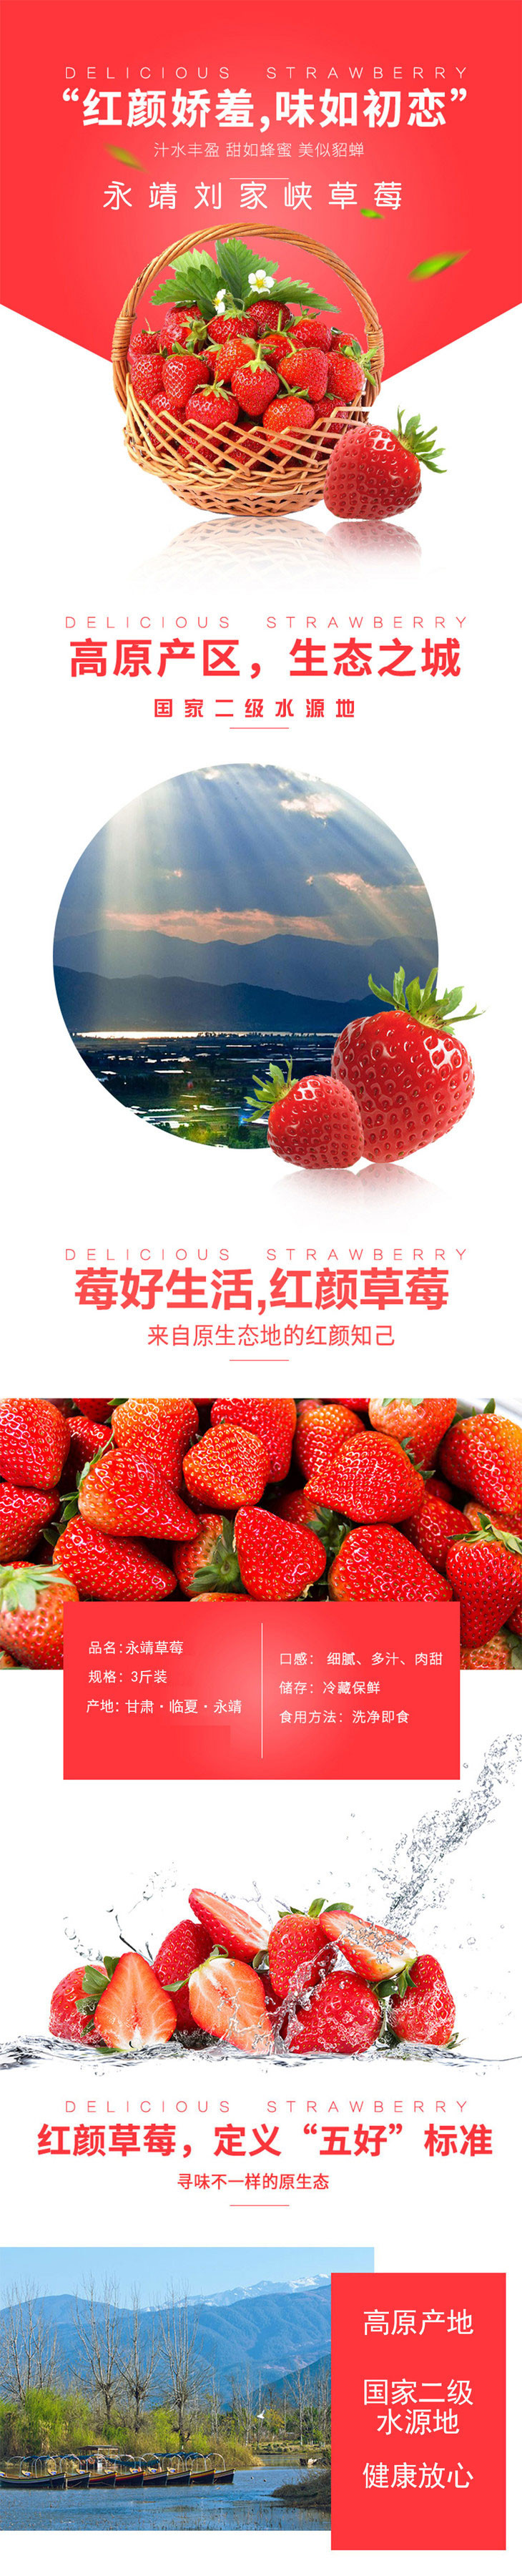 农家自产 【邮乐永靖县】刘家峡草莓 全国包邮